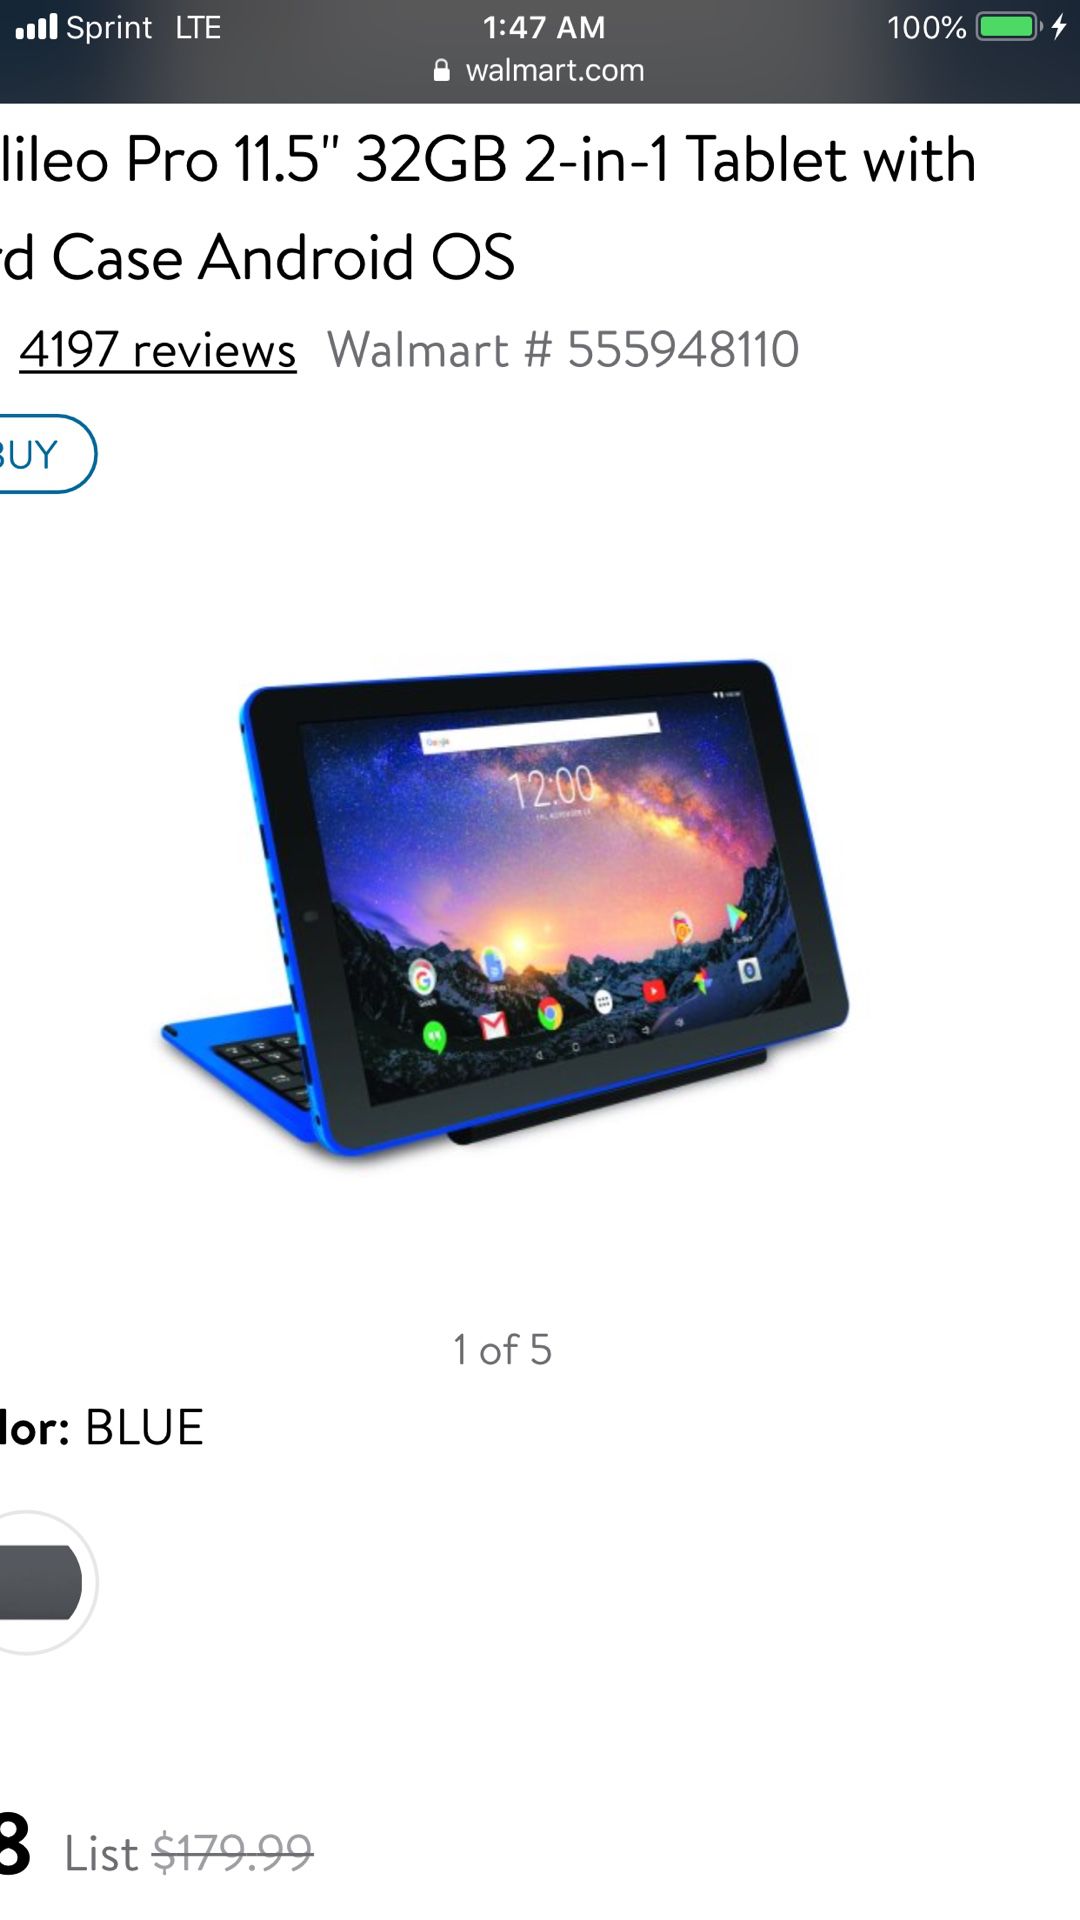 Mini blue laptop